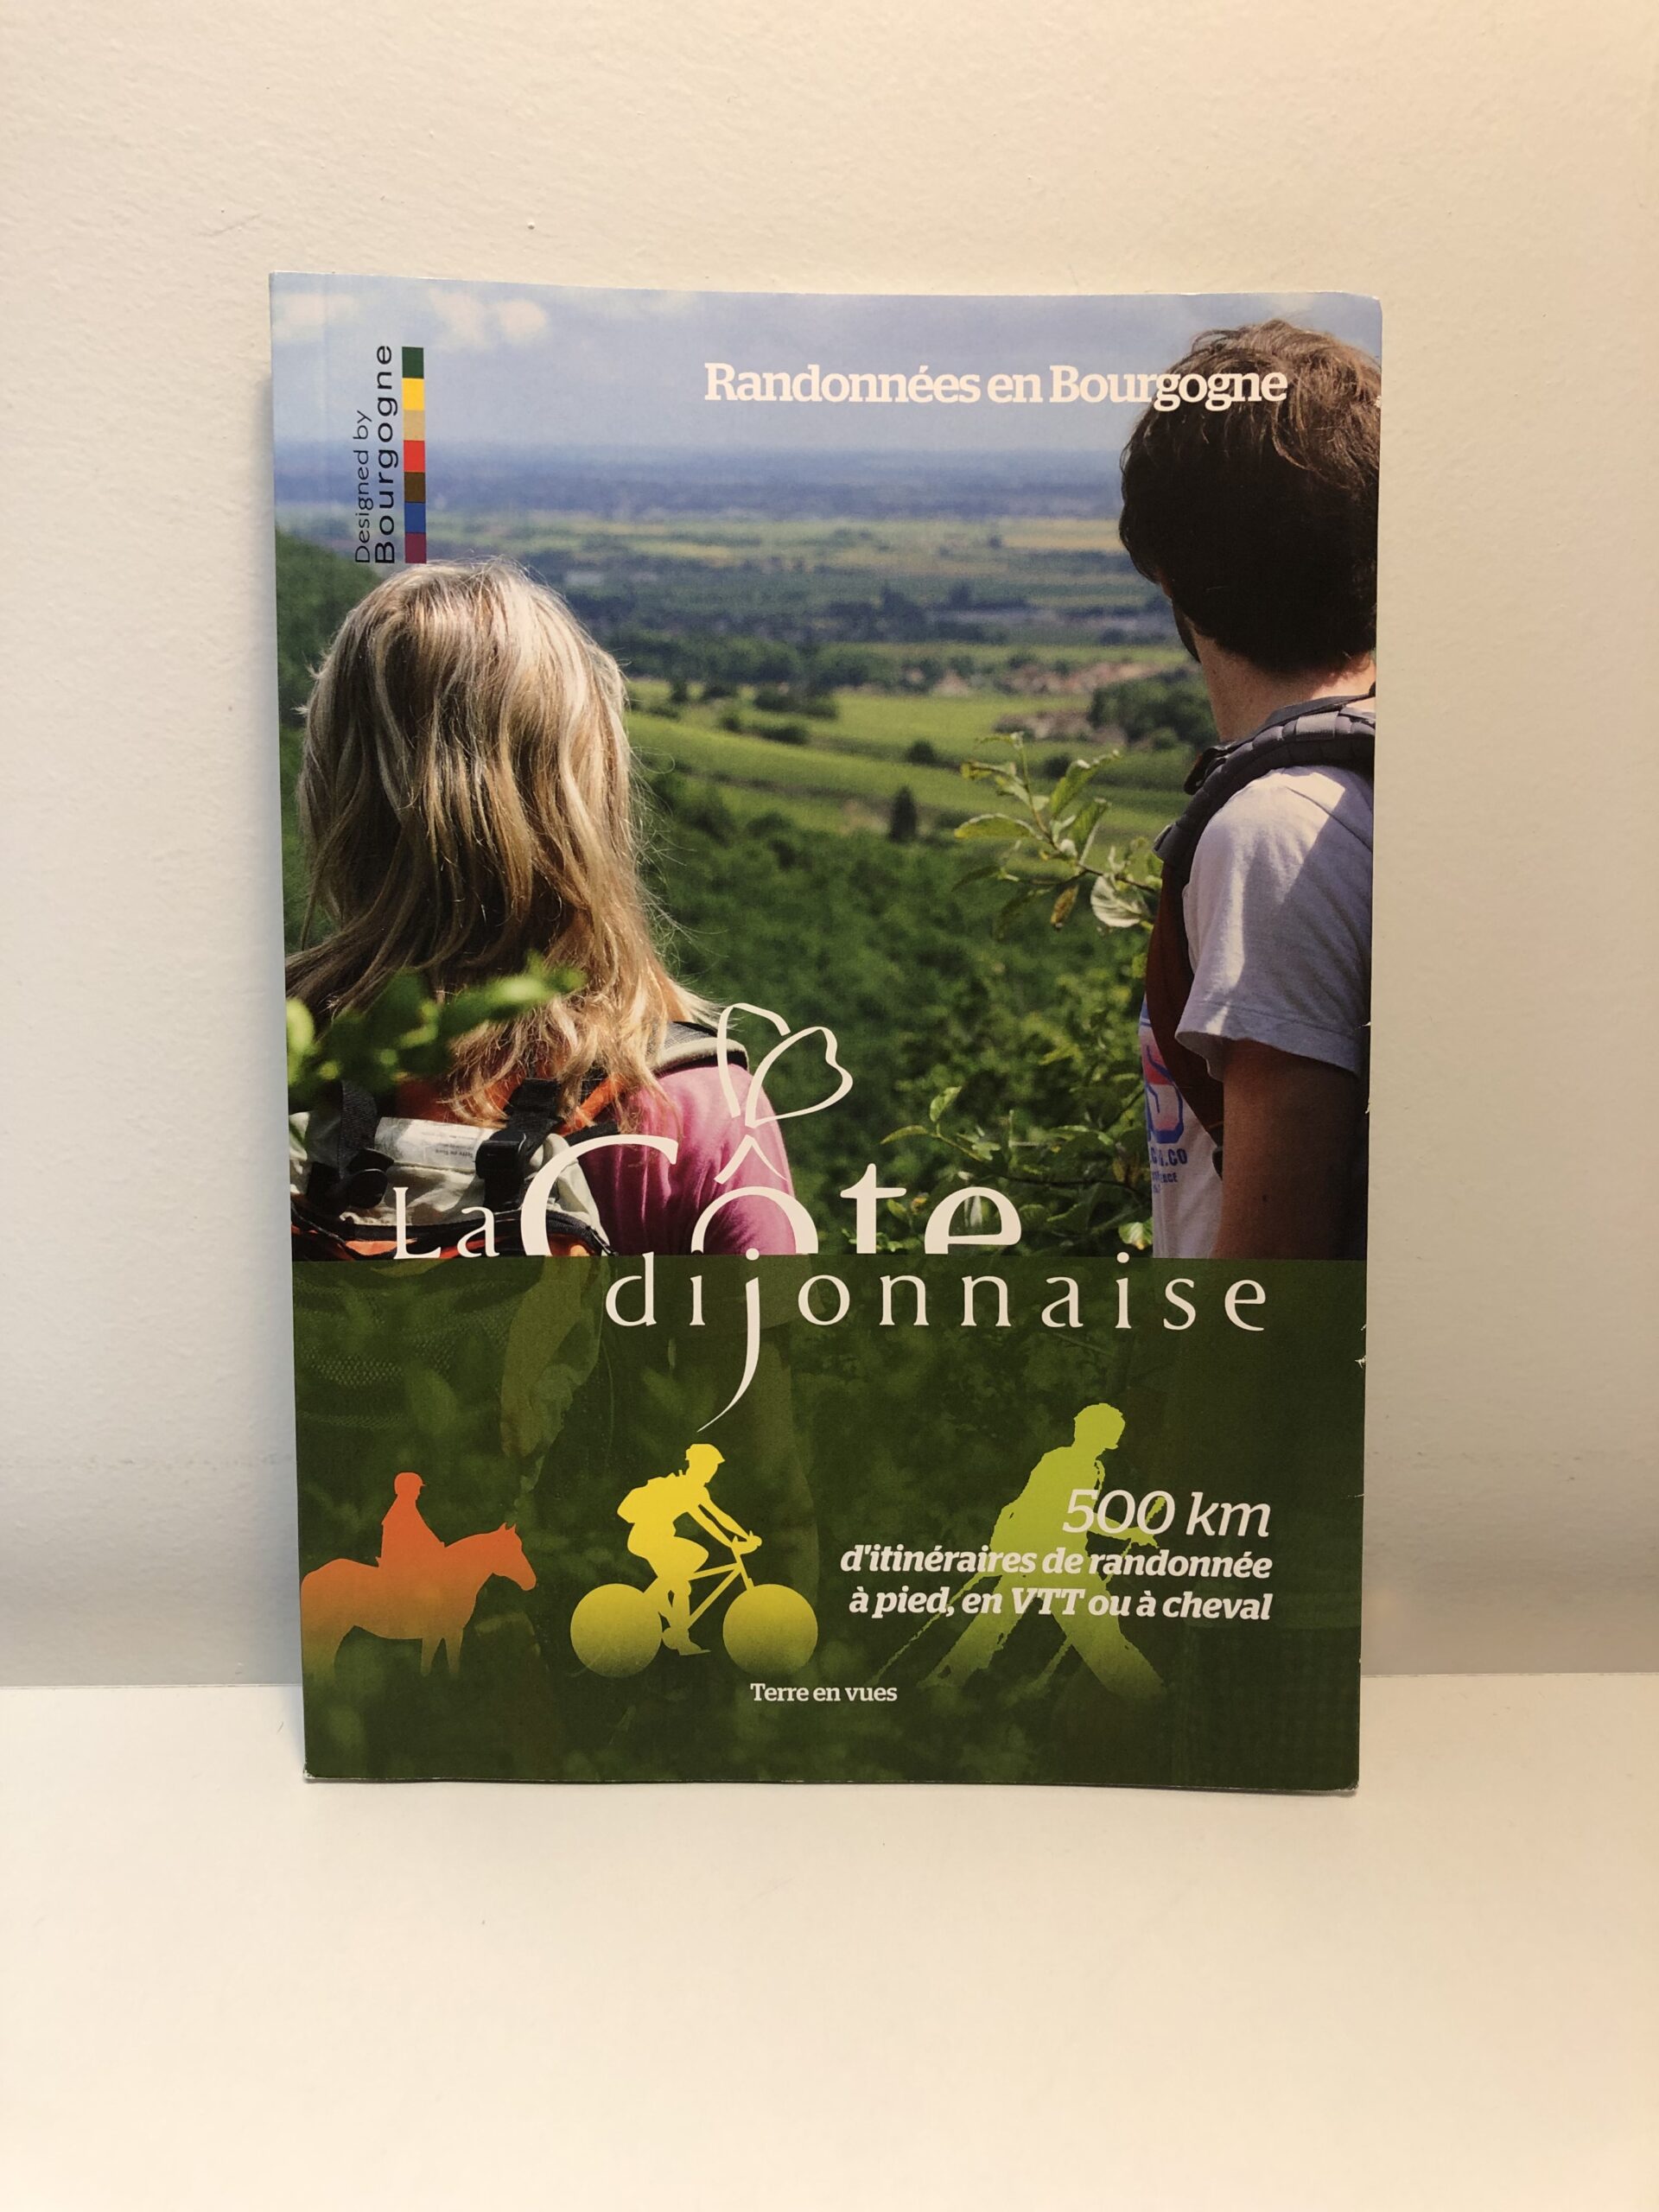 Livre “La Côte Dijonnaise randonnée en Bourgogne”